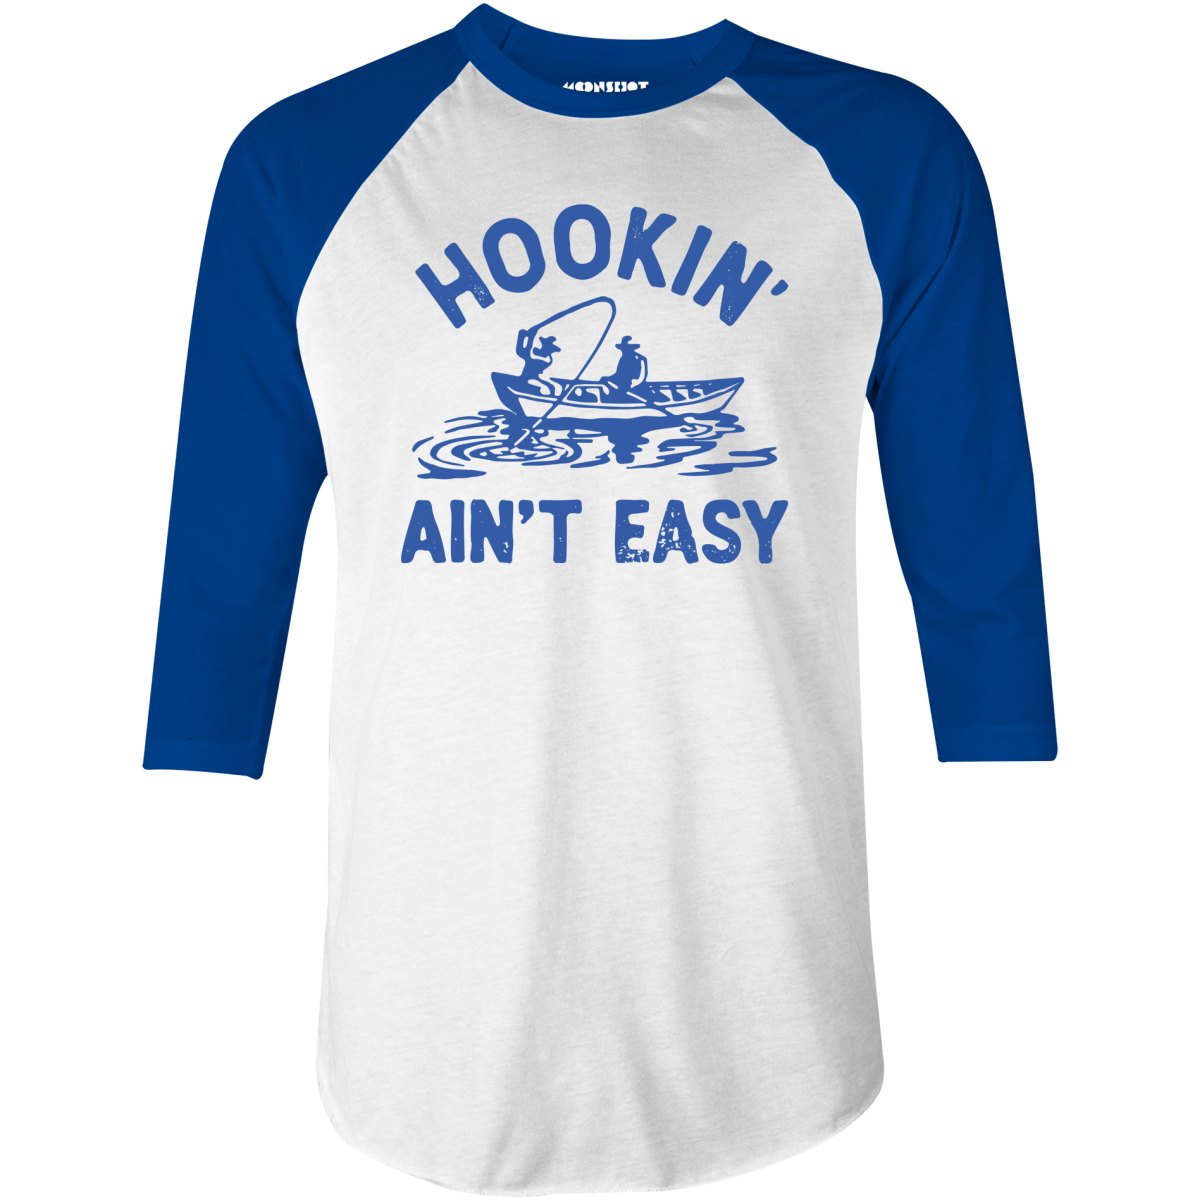 Hookin' Ain't Easy - 3/4 Sleeve Raglan T-Shirt